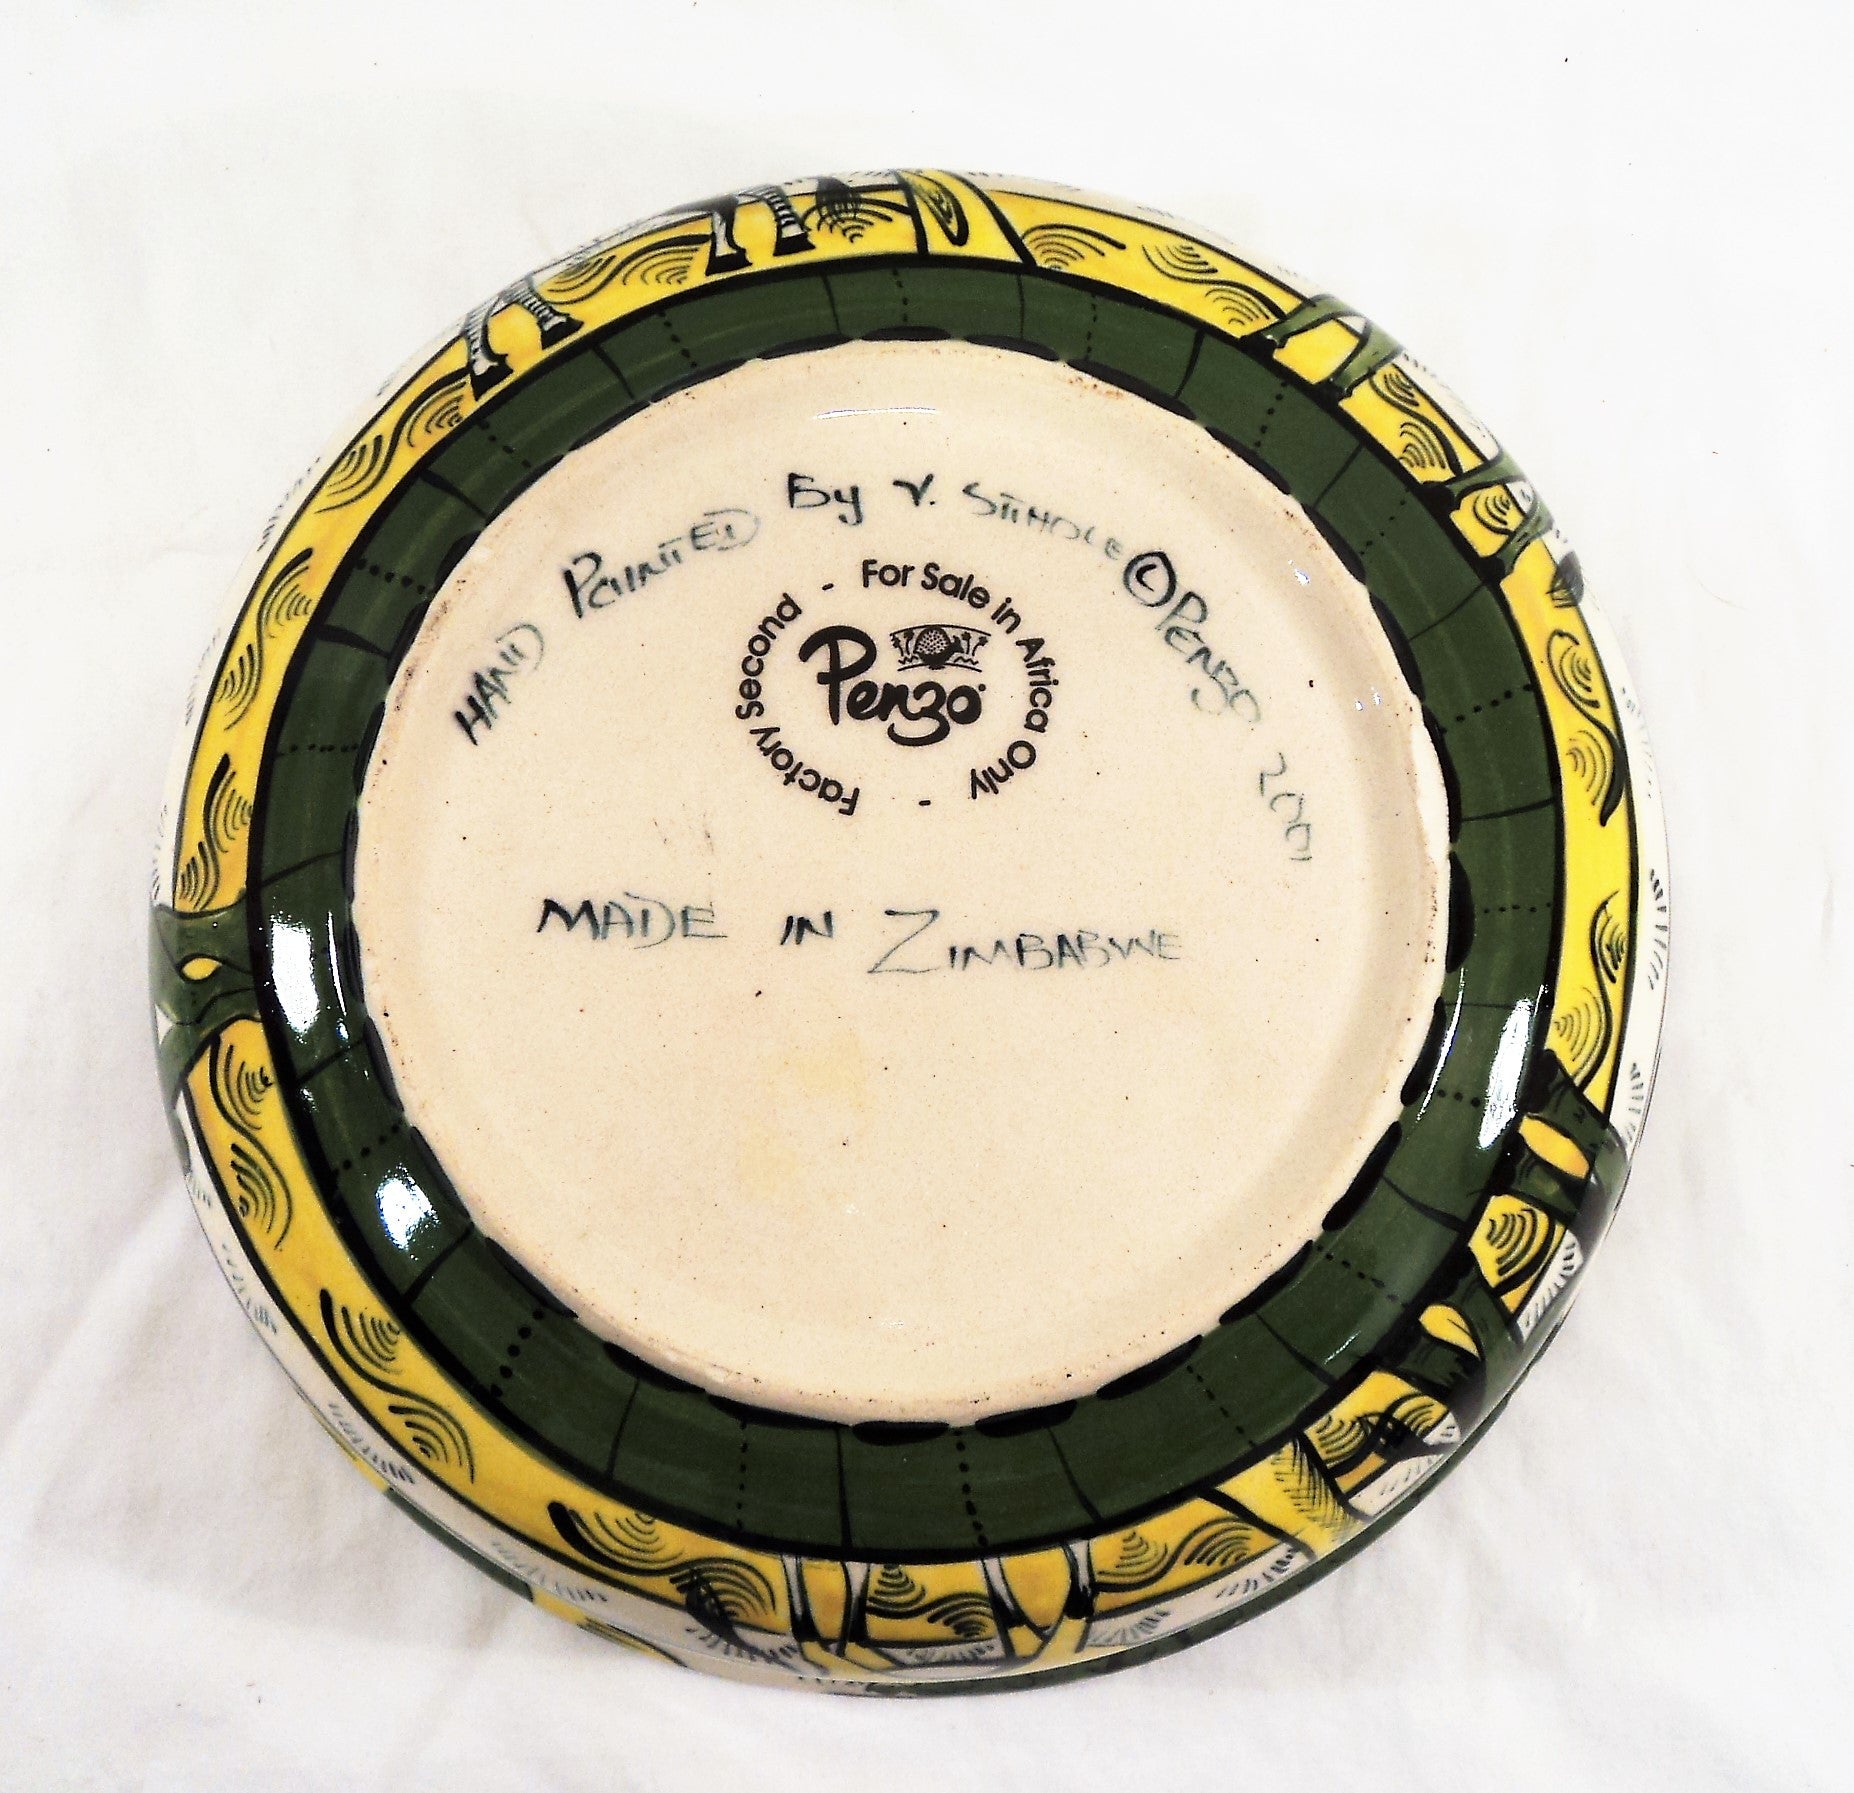 Zimbabwe Penzo Ceramic Bowl from Africa